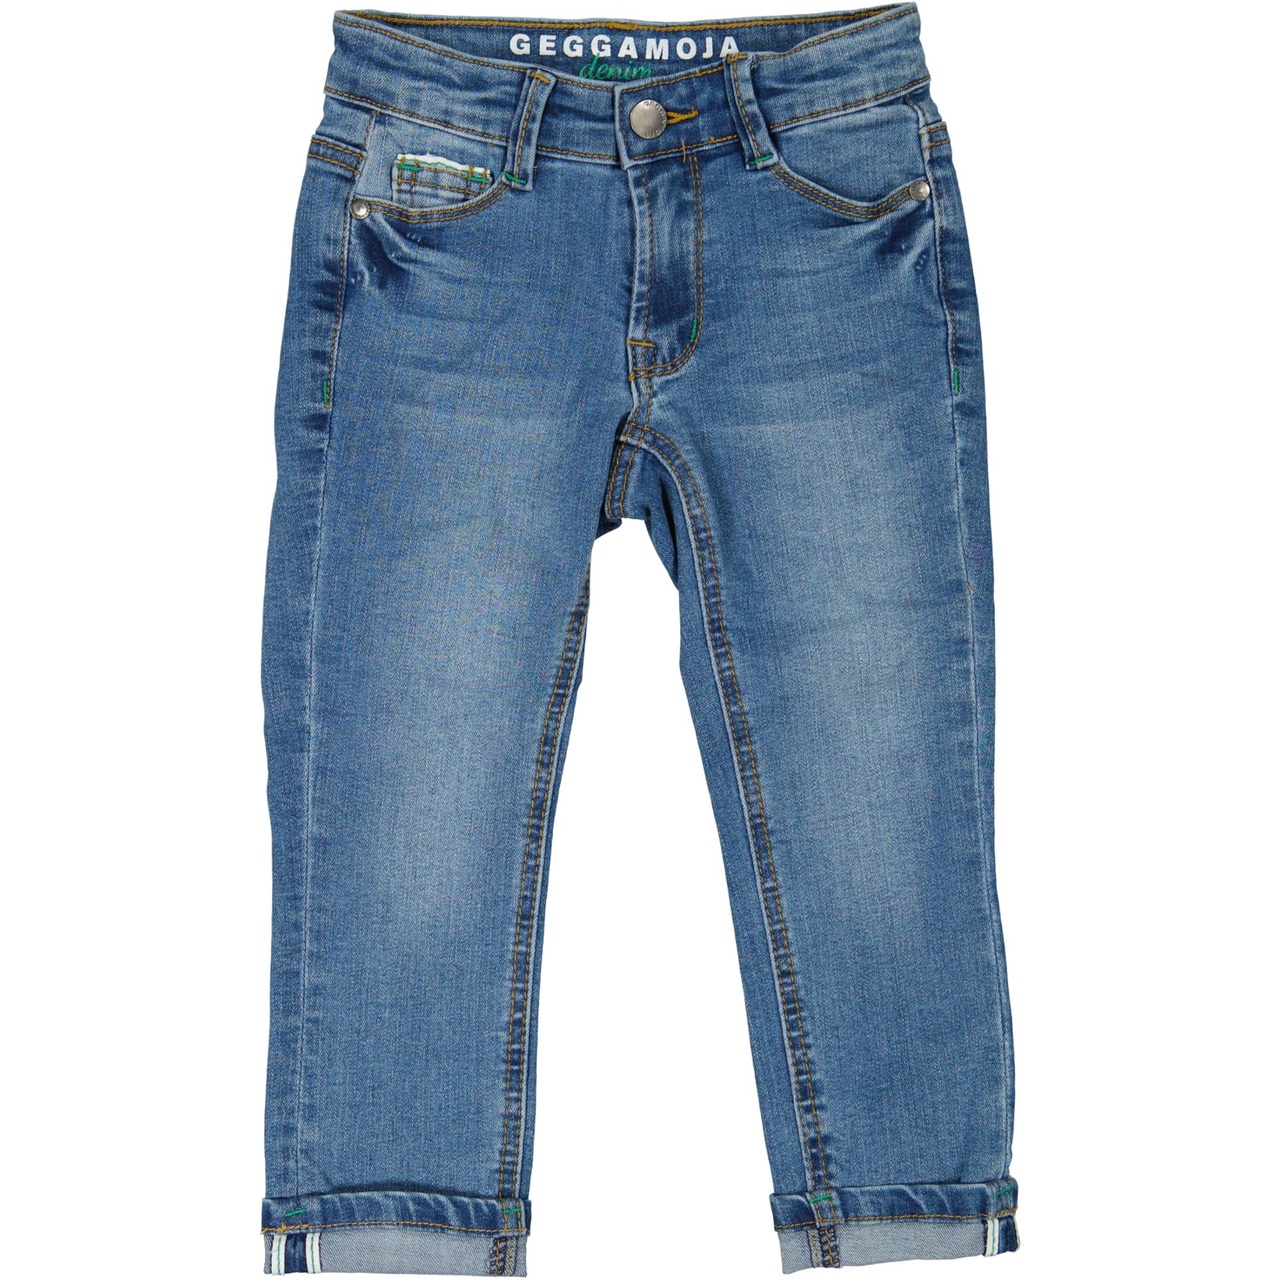 Unisex 5-pocket jeans Denim blue wash